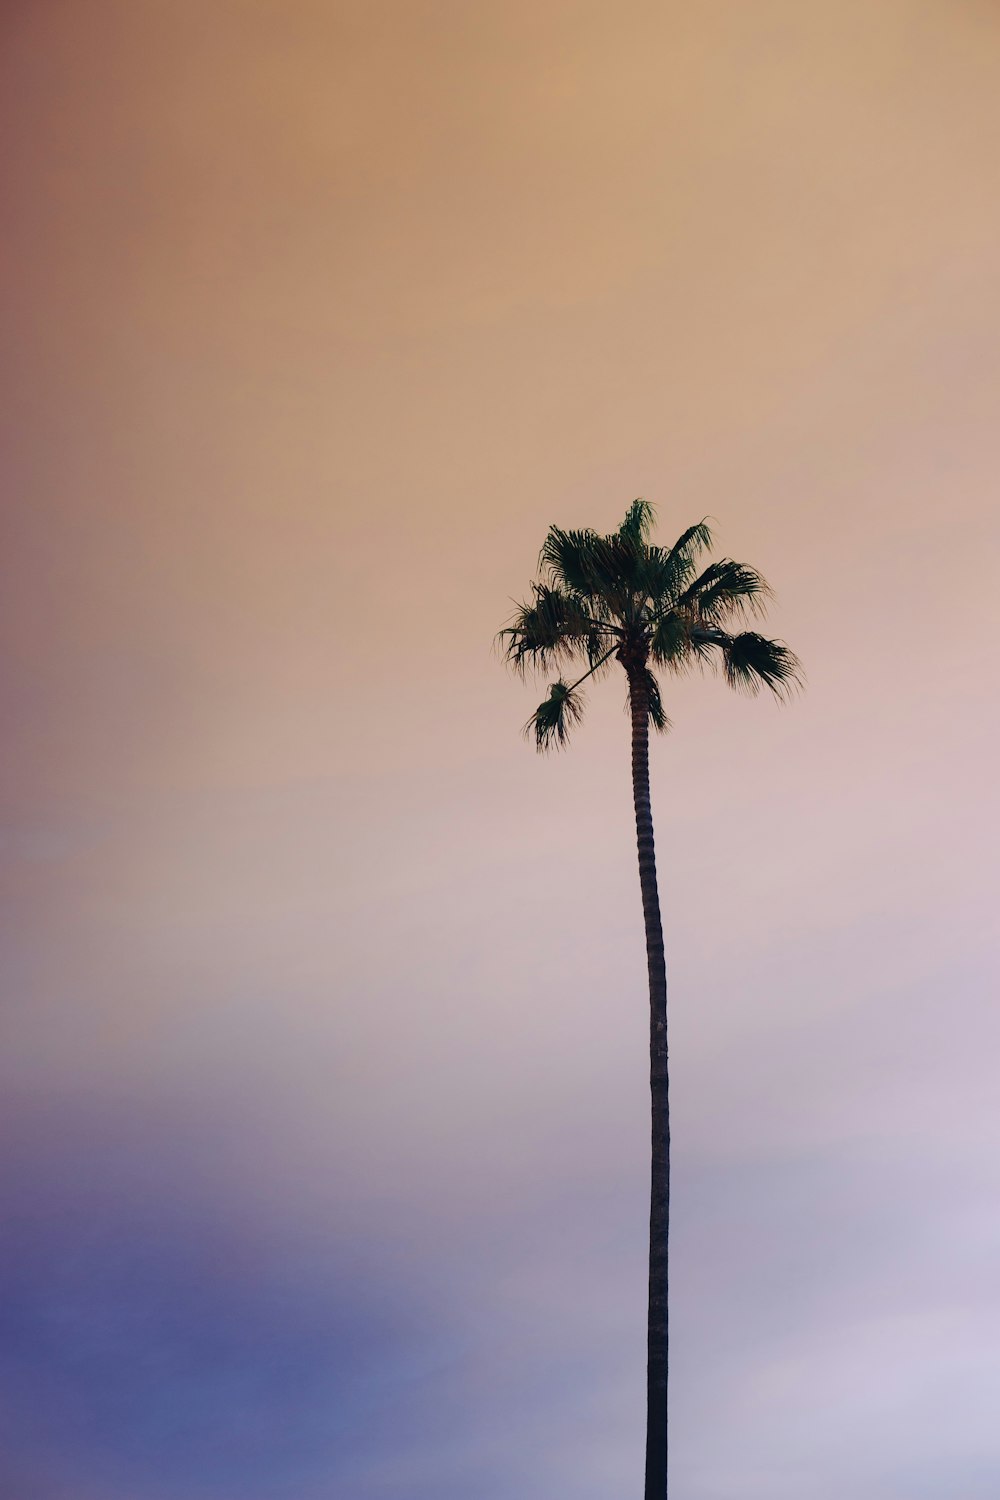 Fotografie aus der Wurmperspektive einer grünen Palme unter bewölktem Himmel